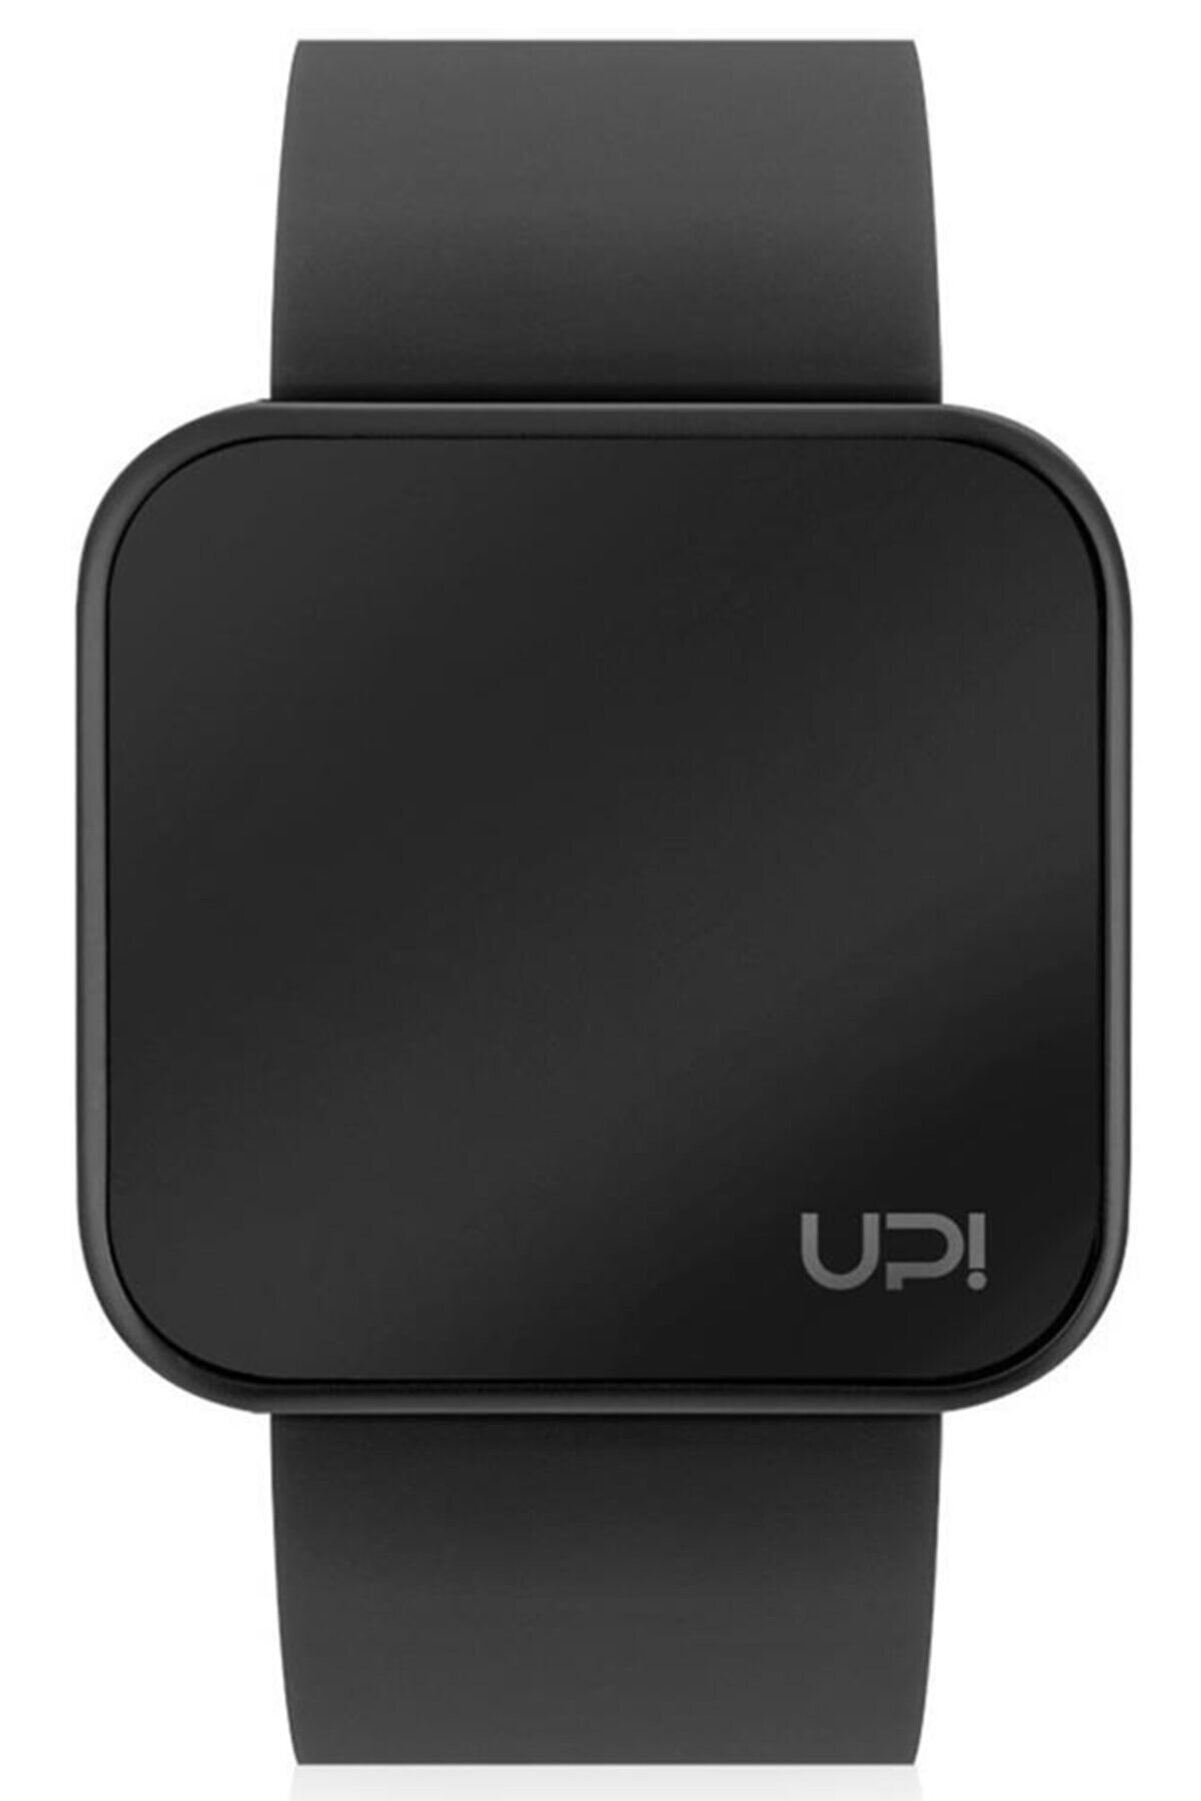 Upwatch Upwatch Touch All Black